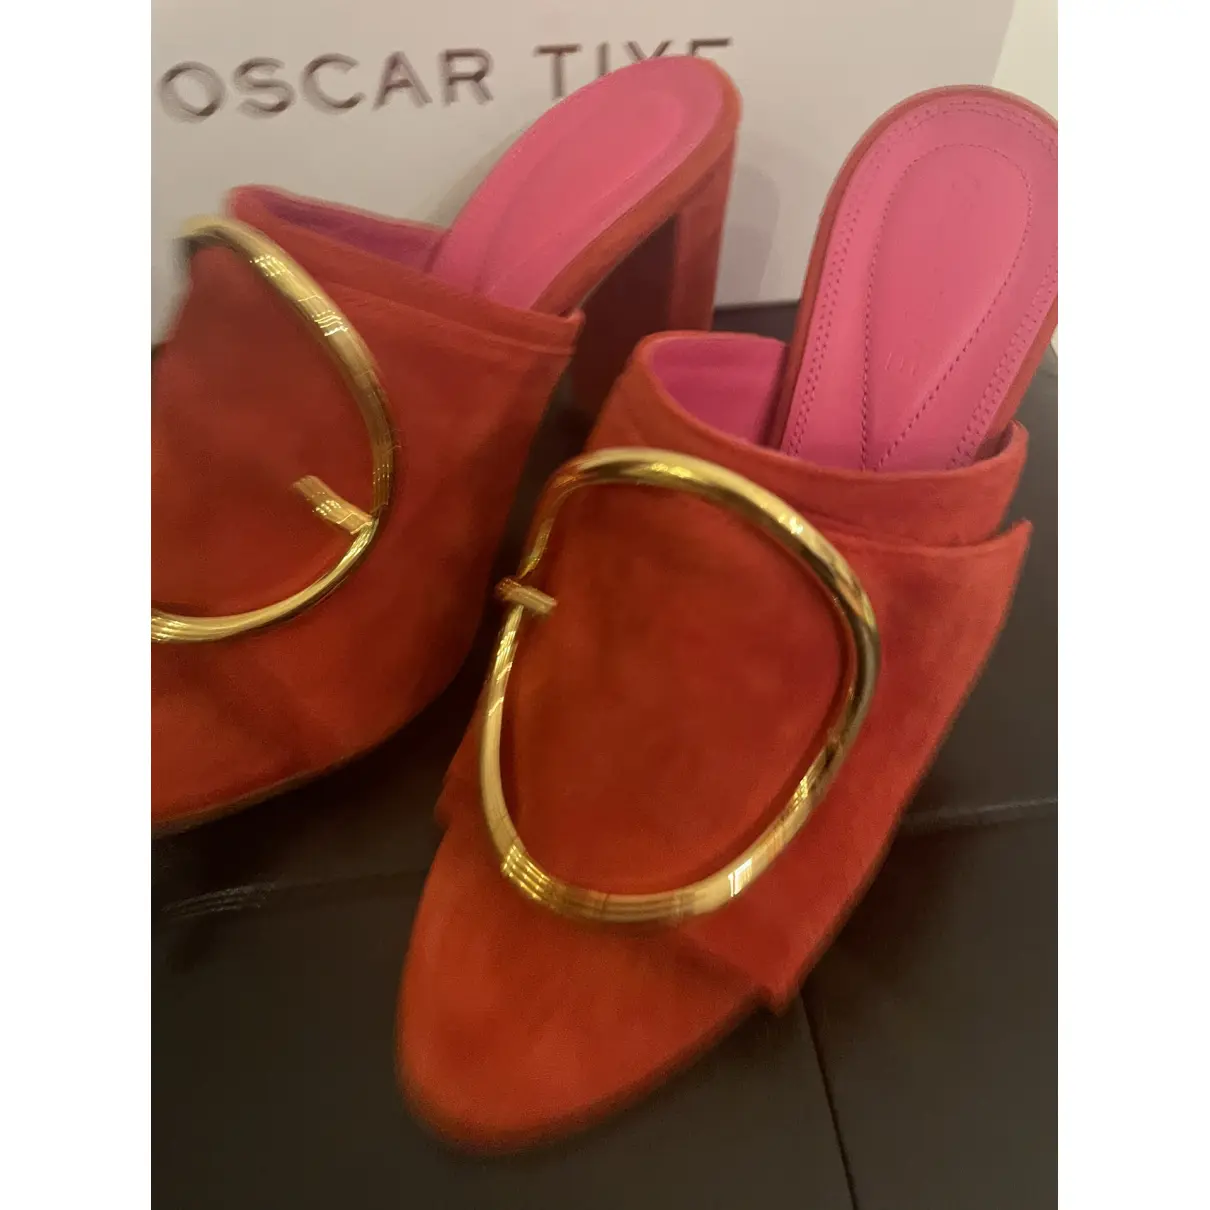 Luxury Oscar Tiye Sandals Women